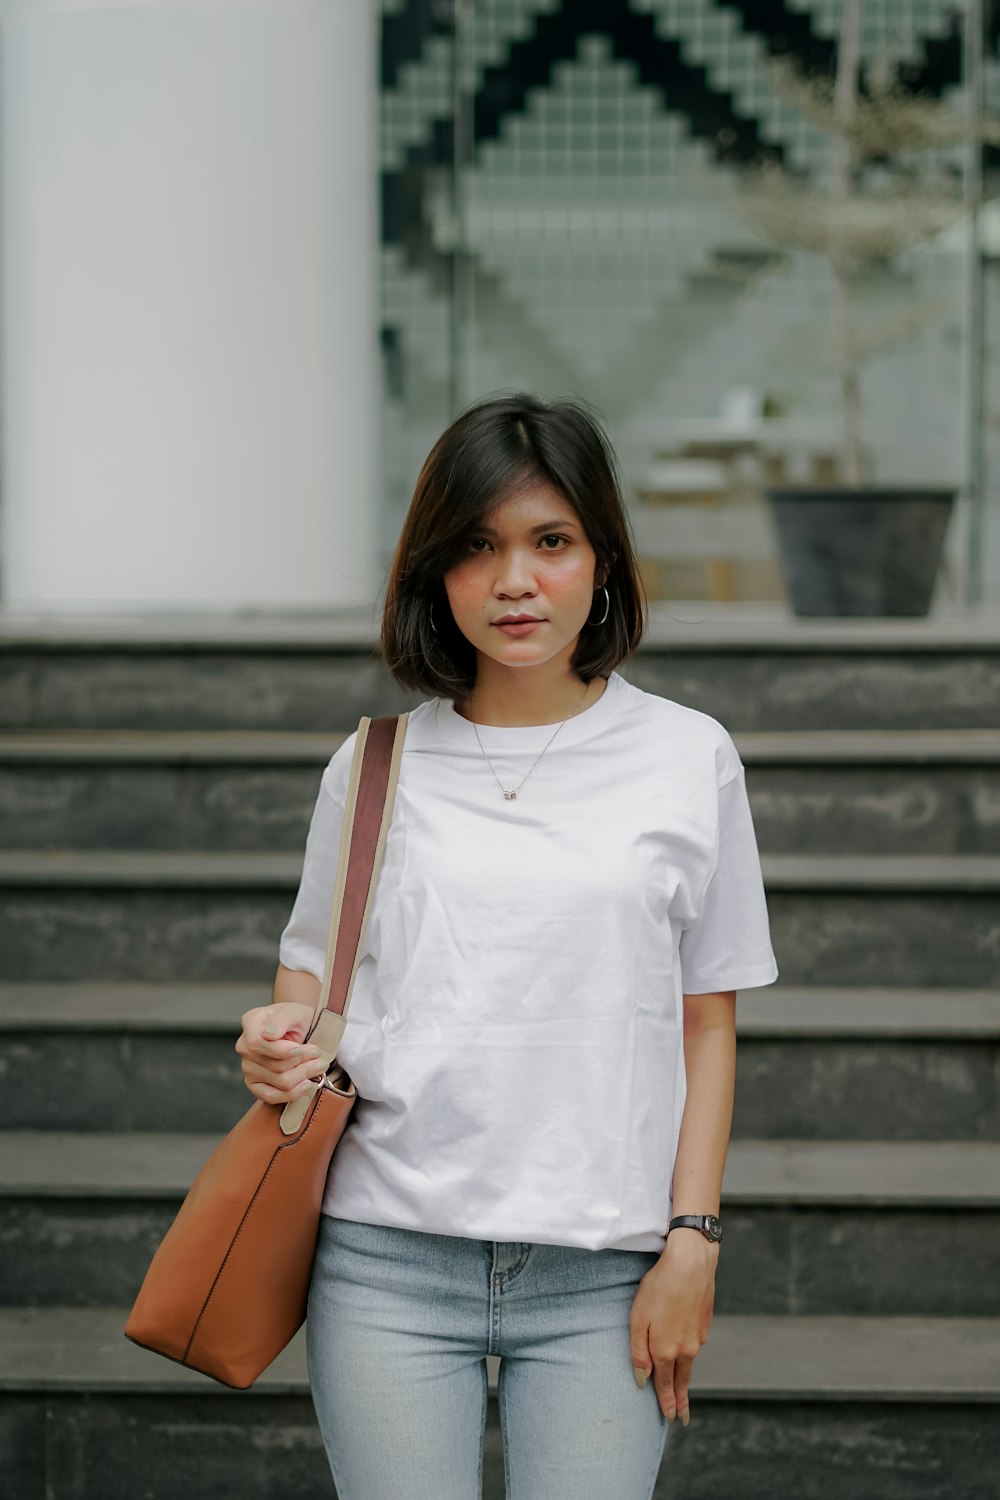 Frau in weißem Rundhals-T-Shirt und brauner Lederschlingentasche